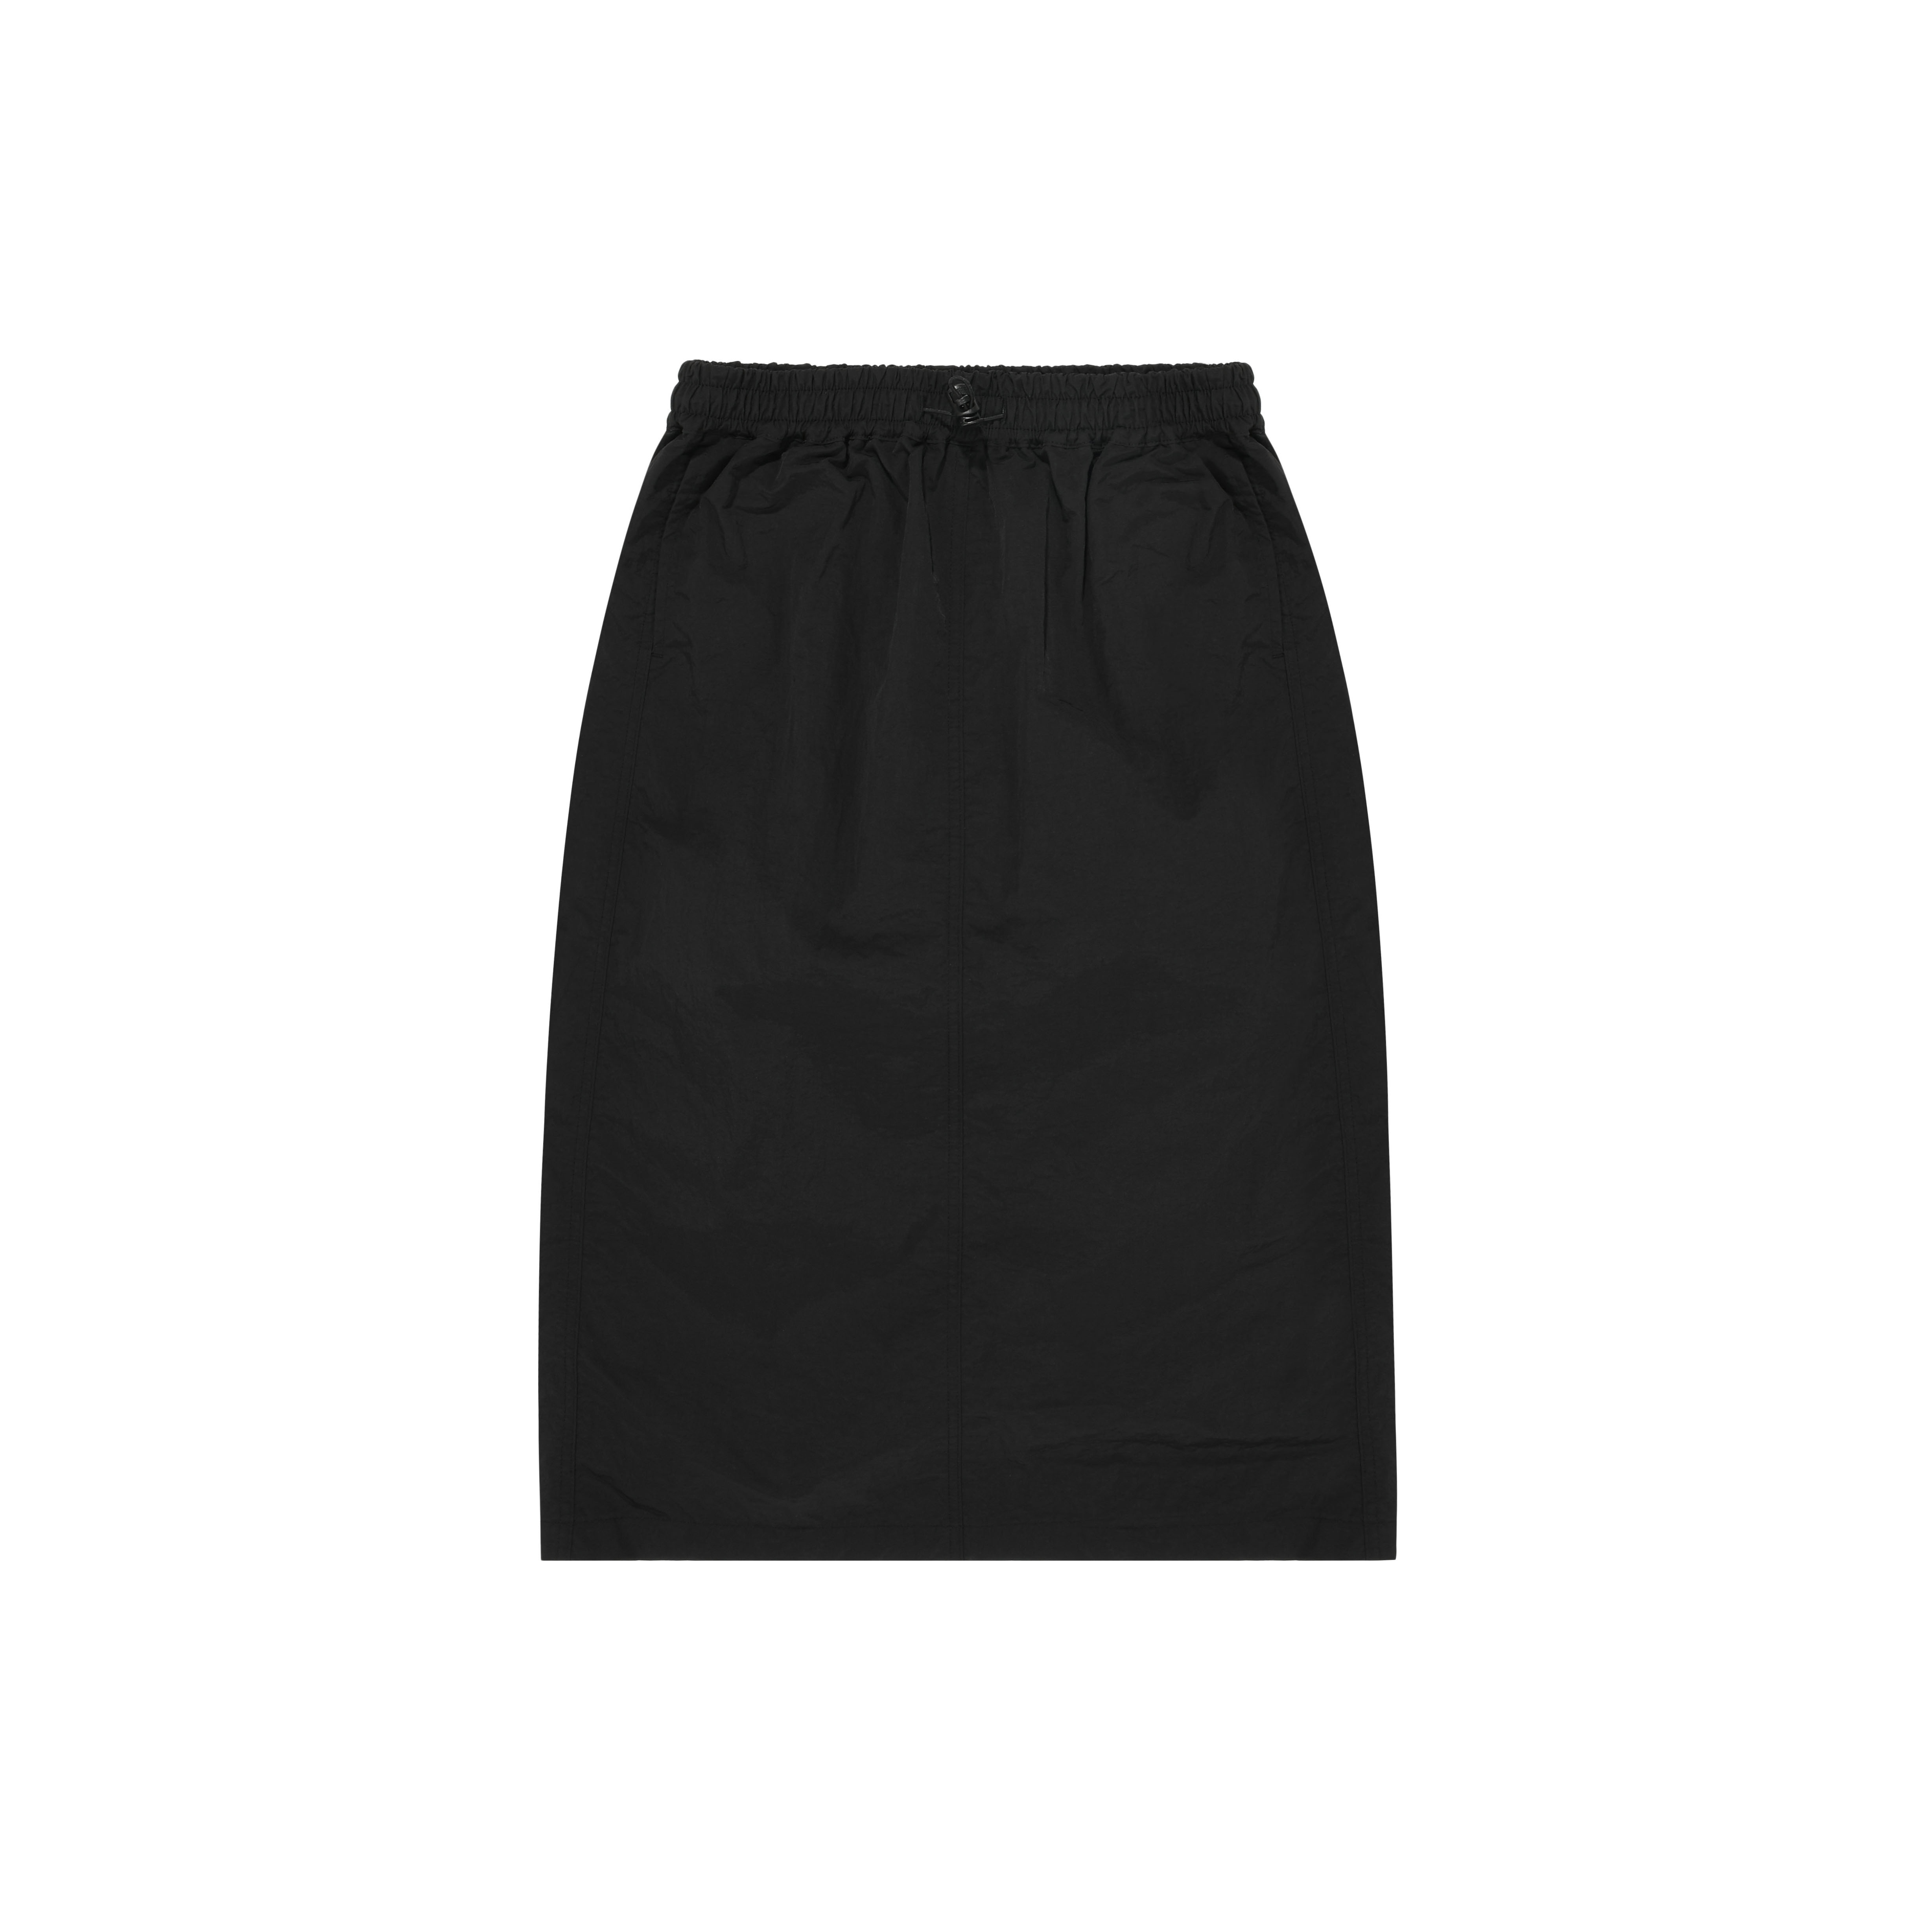 Nylon string skirt black